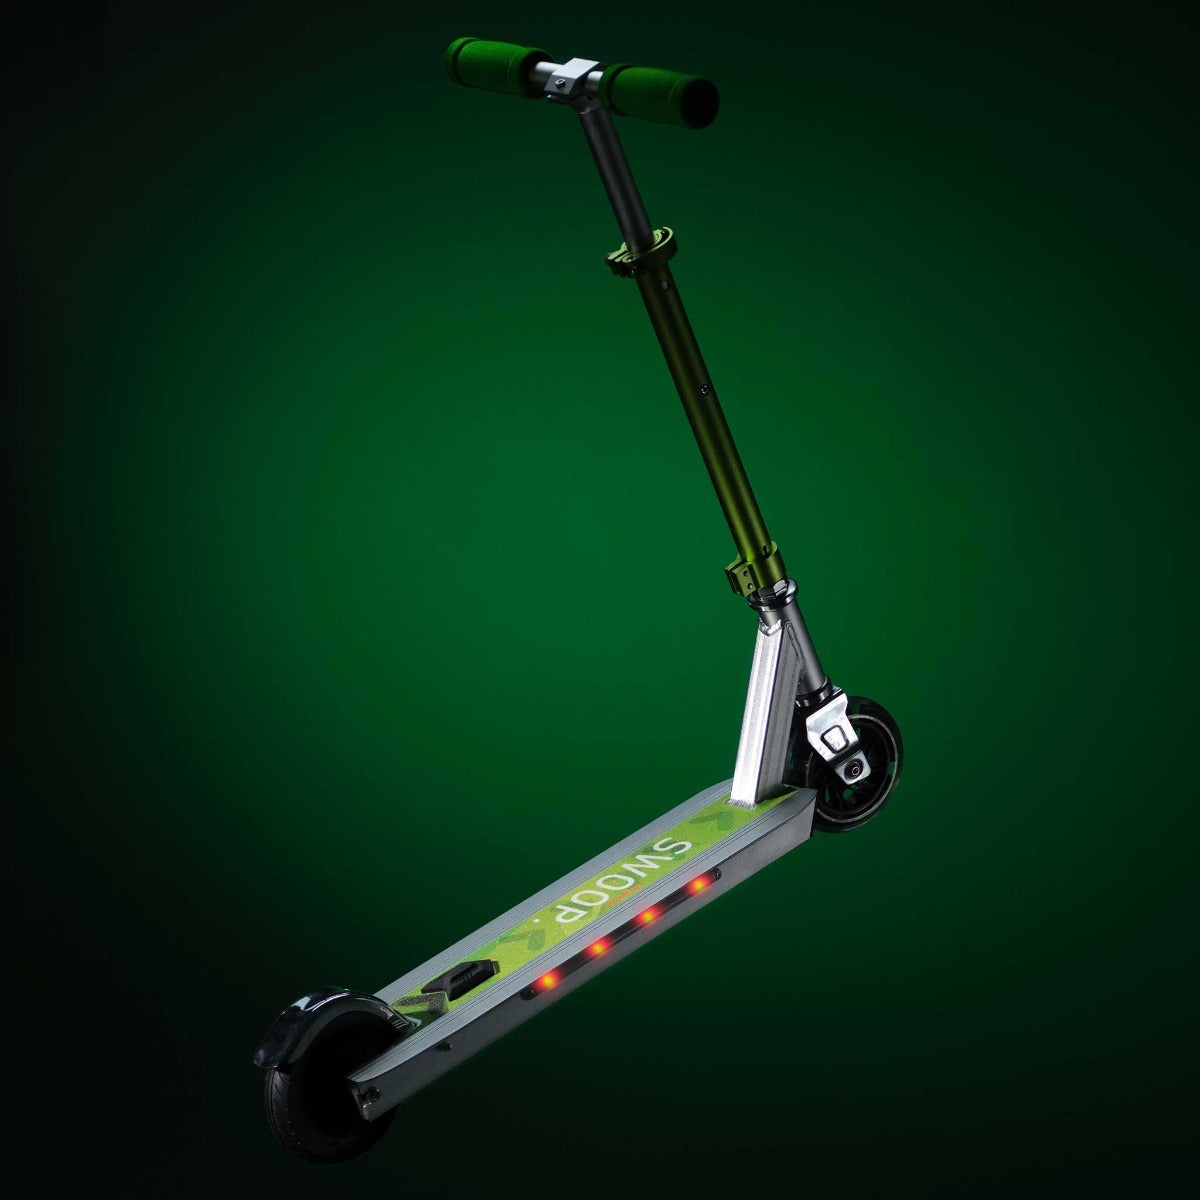 Scooter électrique Trottinette électrique pour enfants